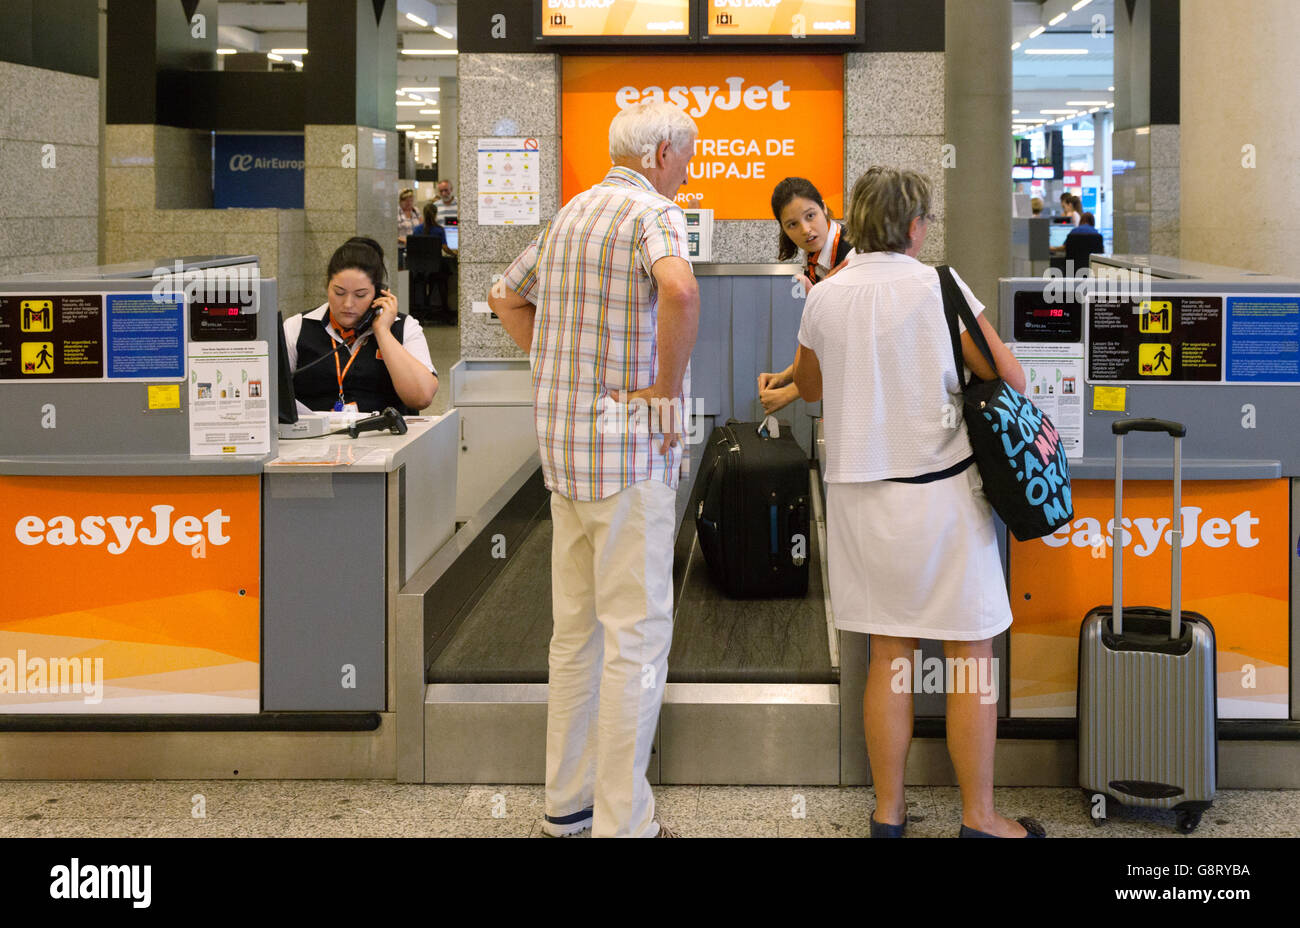 Assurance de l'aéroport à l'hôtel ; le passager au comptoir dépose bagages Easyjet, l'aéroport de Palma, Majorque ( Majorque ), Îles Baléares, Espagne Europe Banque D'Images